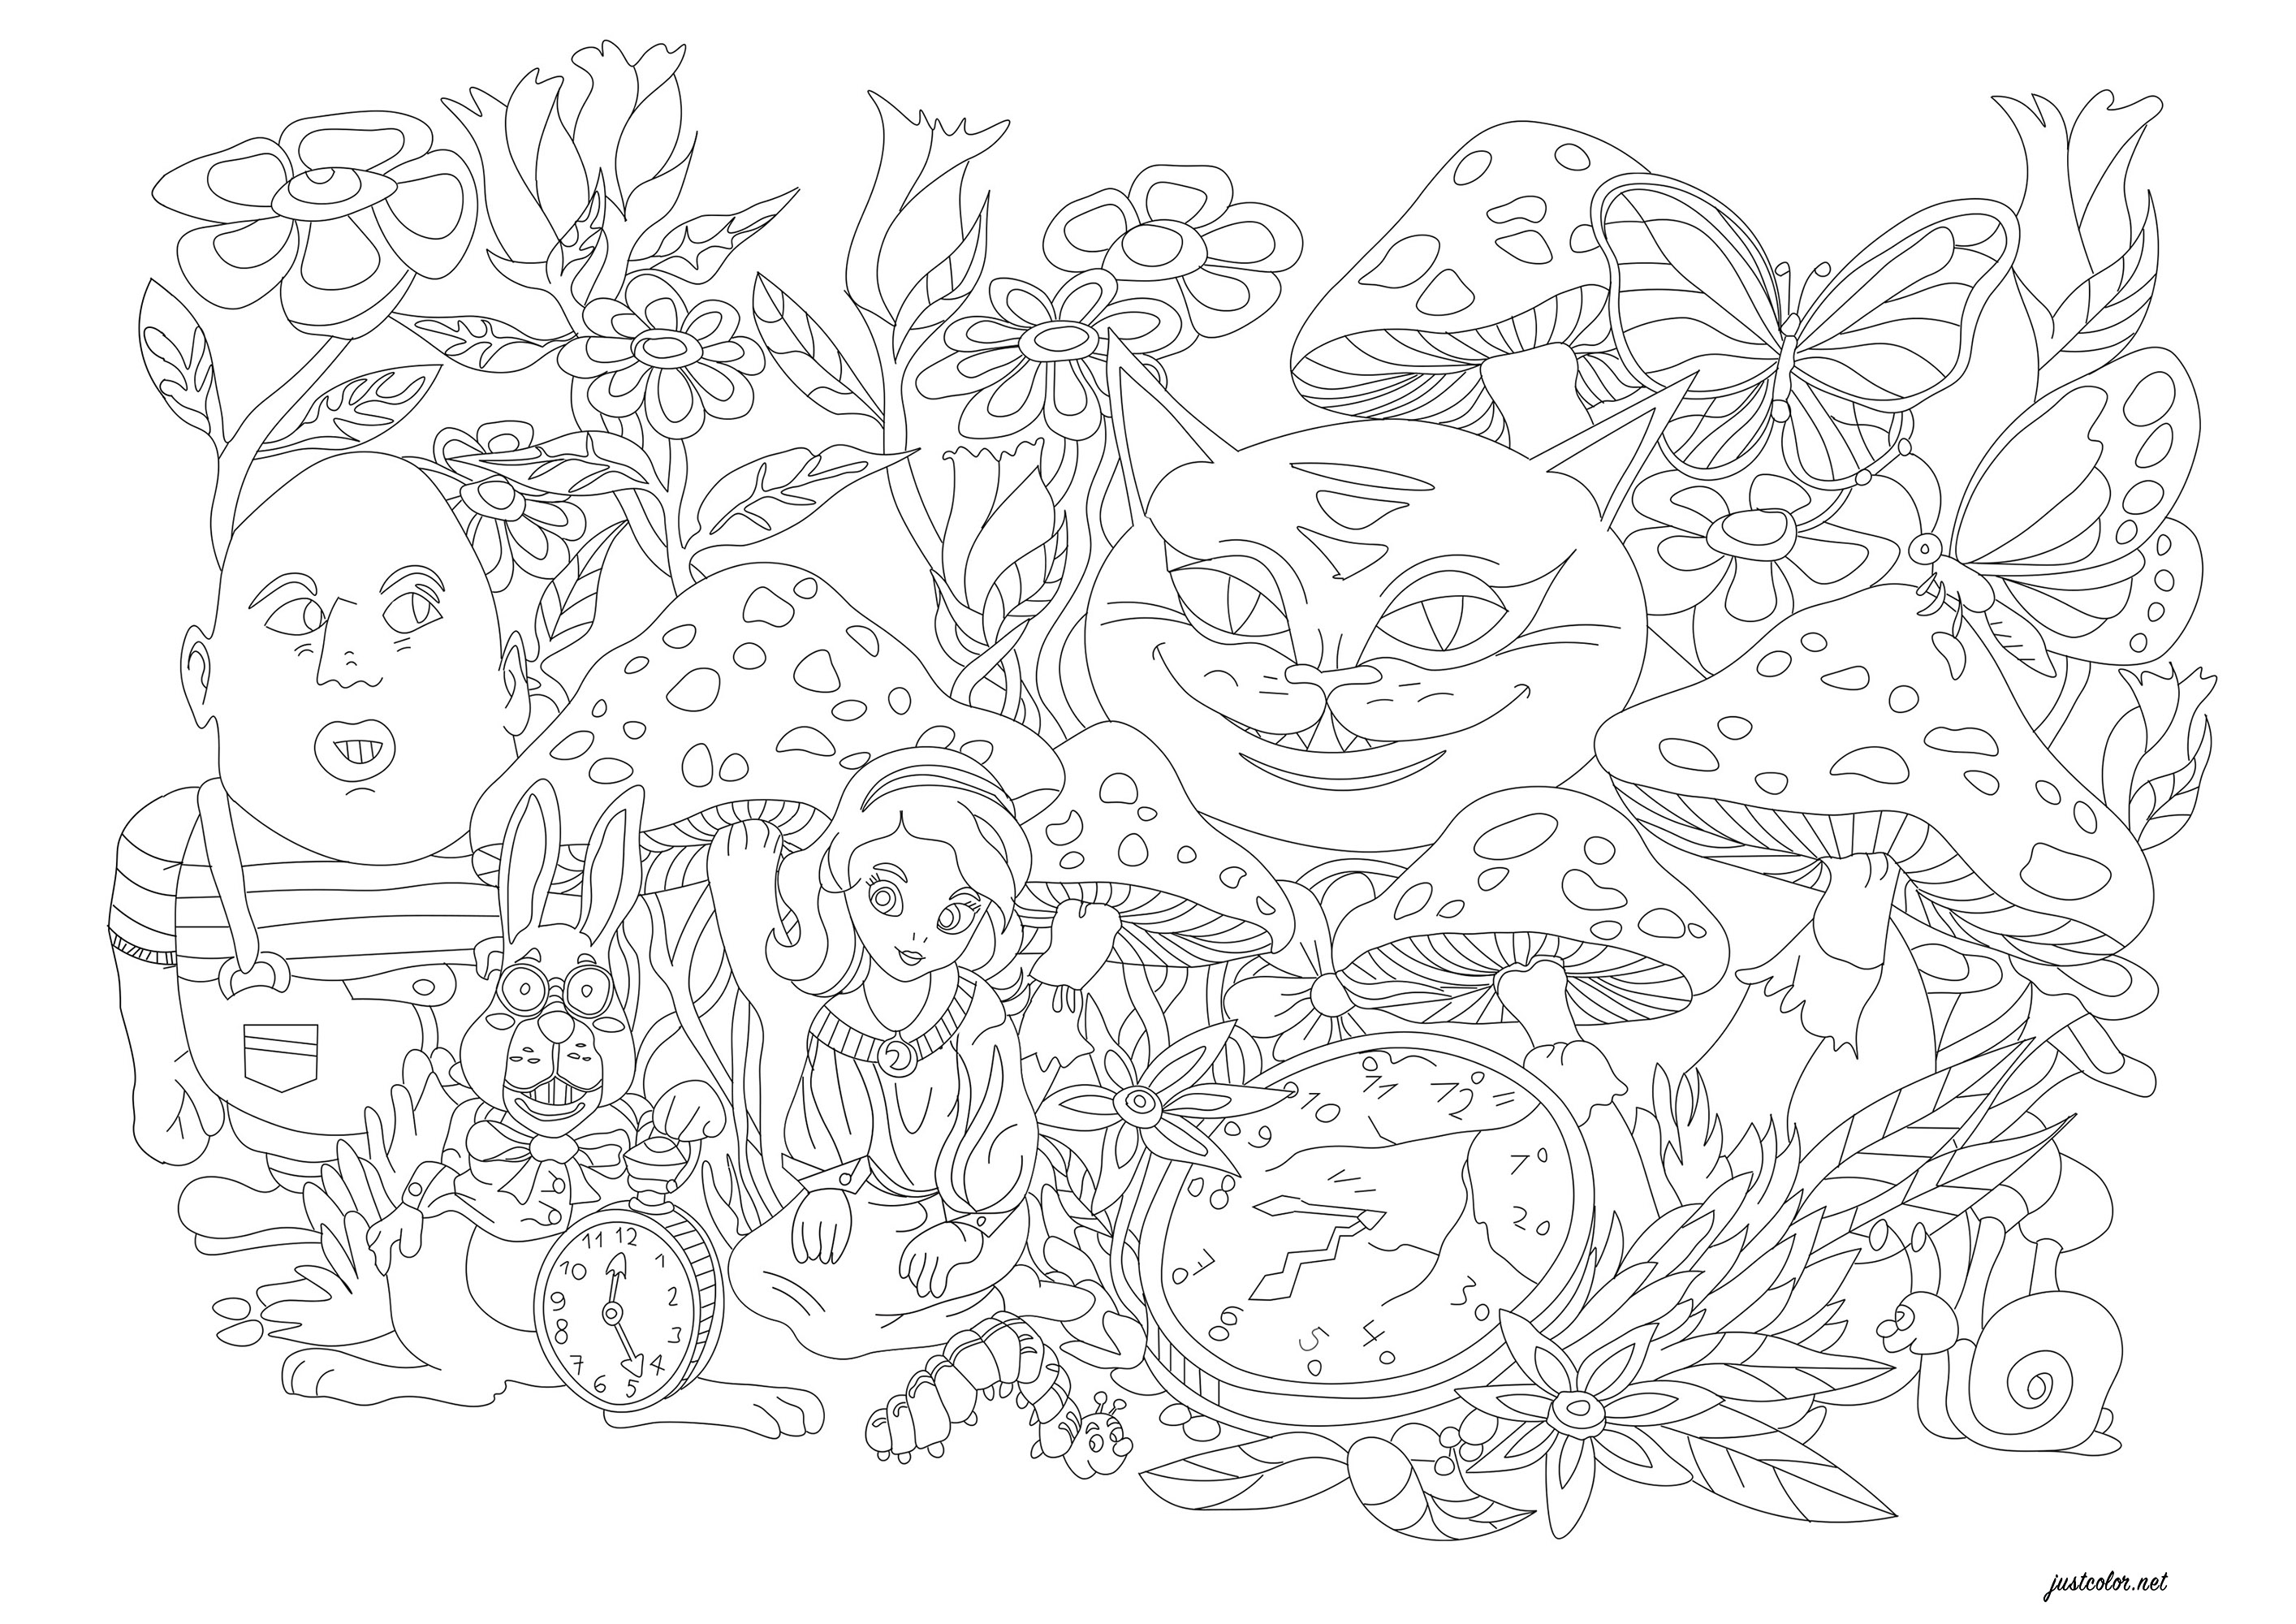 Uma ilustração para colorir em referência ao livro 'As Aventuras de Alice no País das Maravilhas'. Este é um romance inglês publicado em 1865 por Lewis Carroll. Para colorir: flores fantásticas, monstros, o coelho, monstros, um caracol, borboletas e a maravilhosa Alice, Artista : Morgan